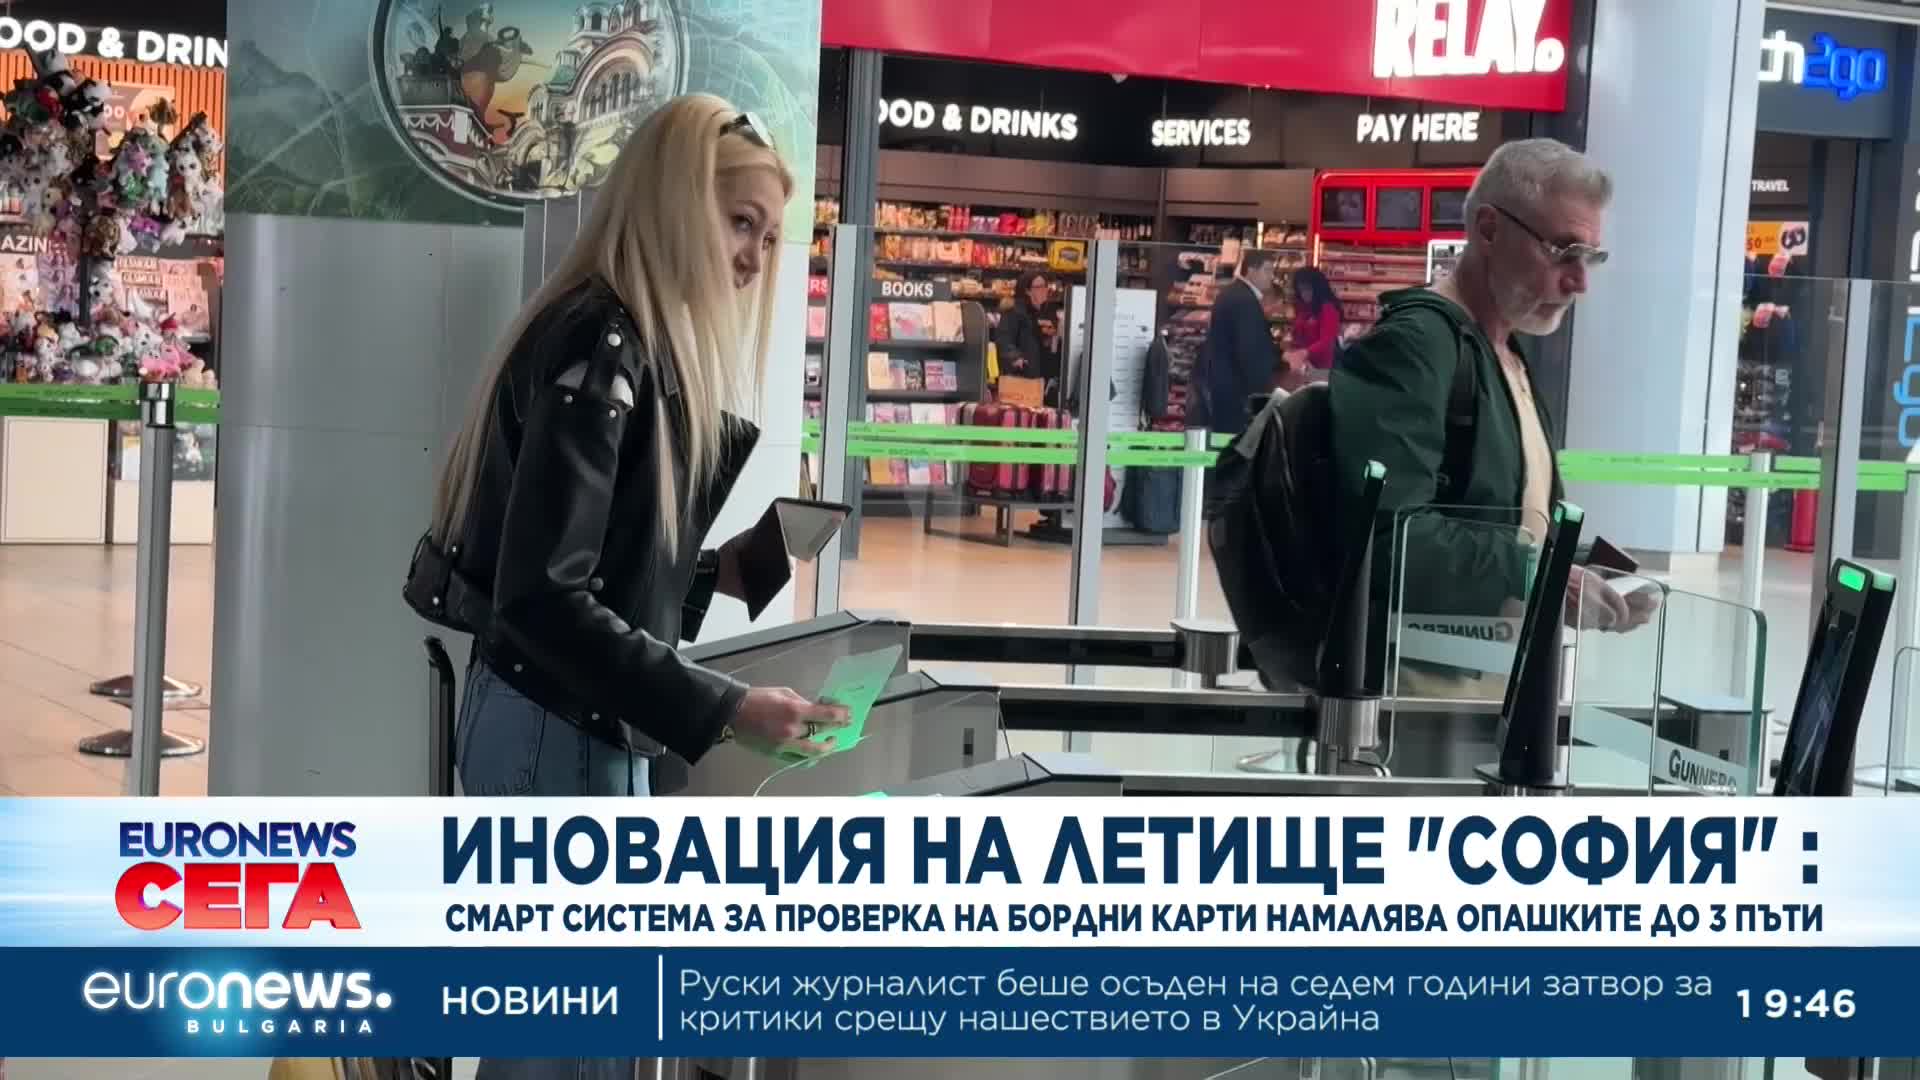 Иновация на летище София: Смарт система за проверка на бордни карти намалява опашките до 3 пъти